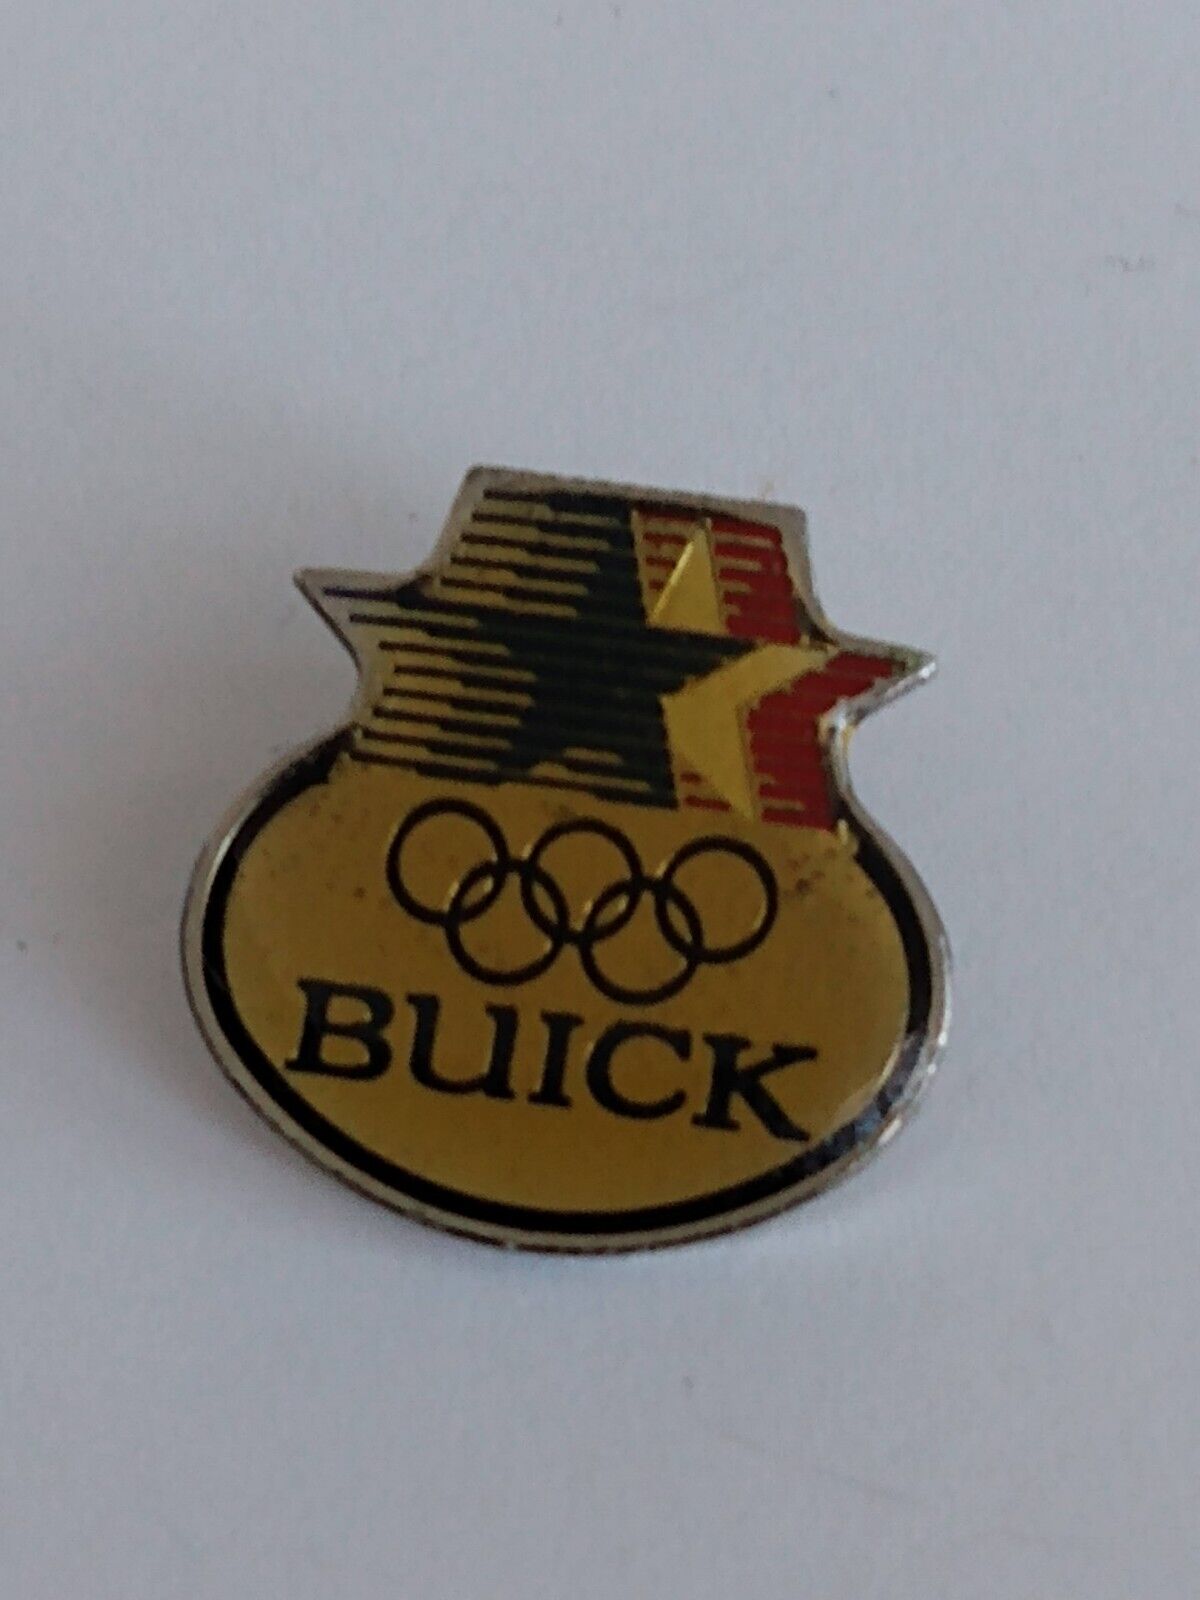 Buick Olympics USA 1984 Los Angeles Lapel Pin